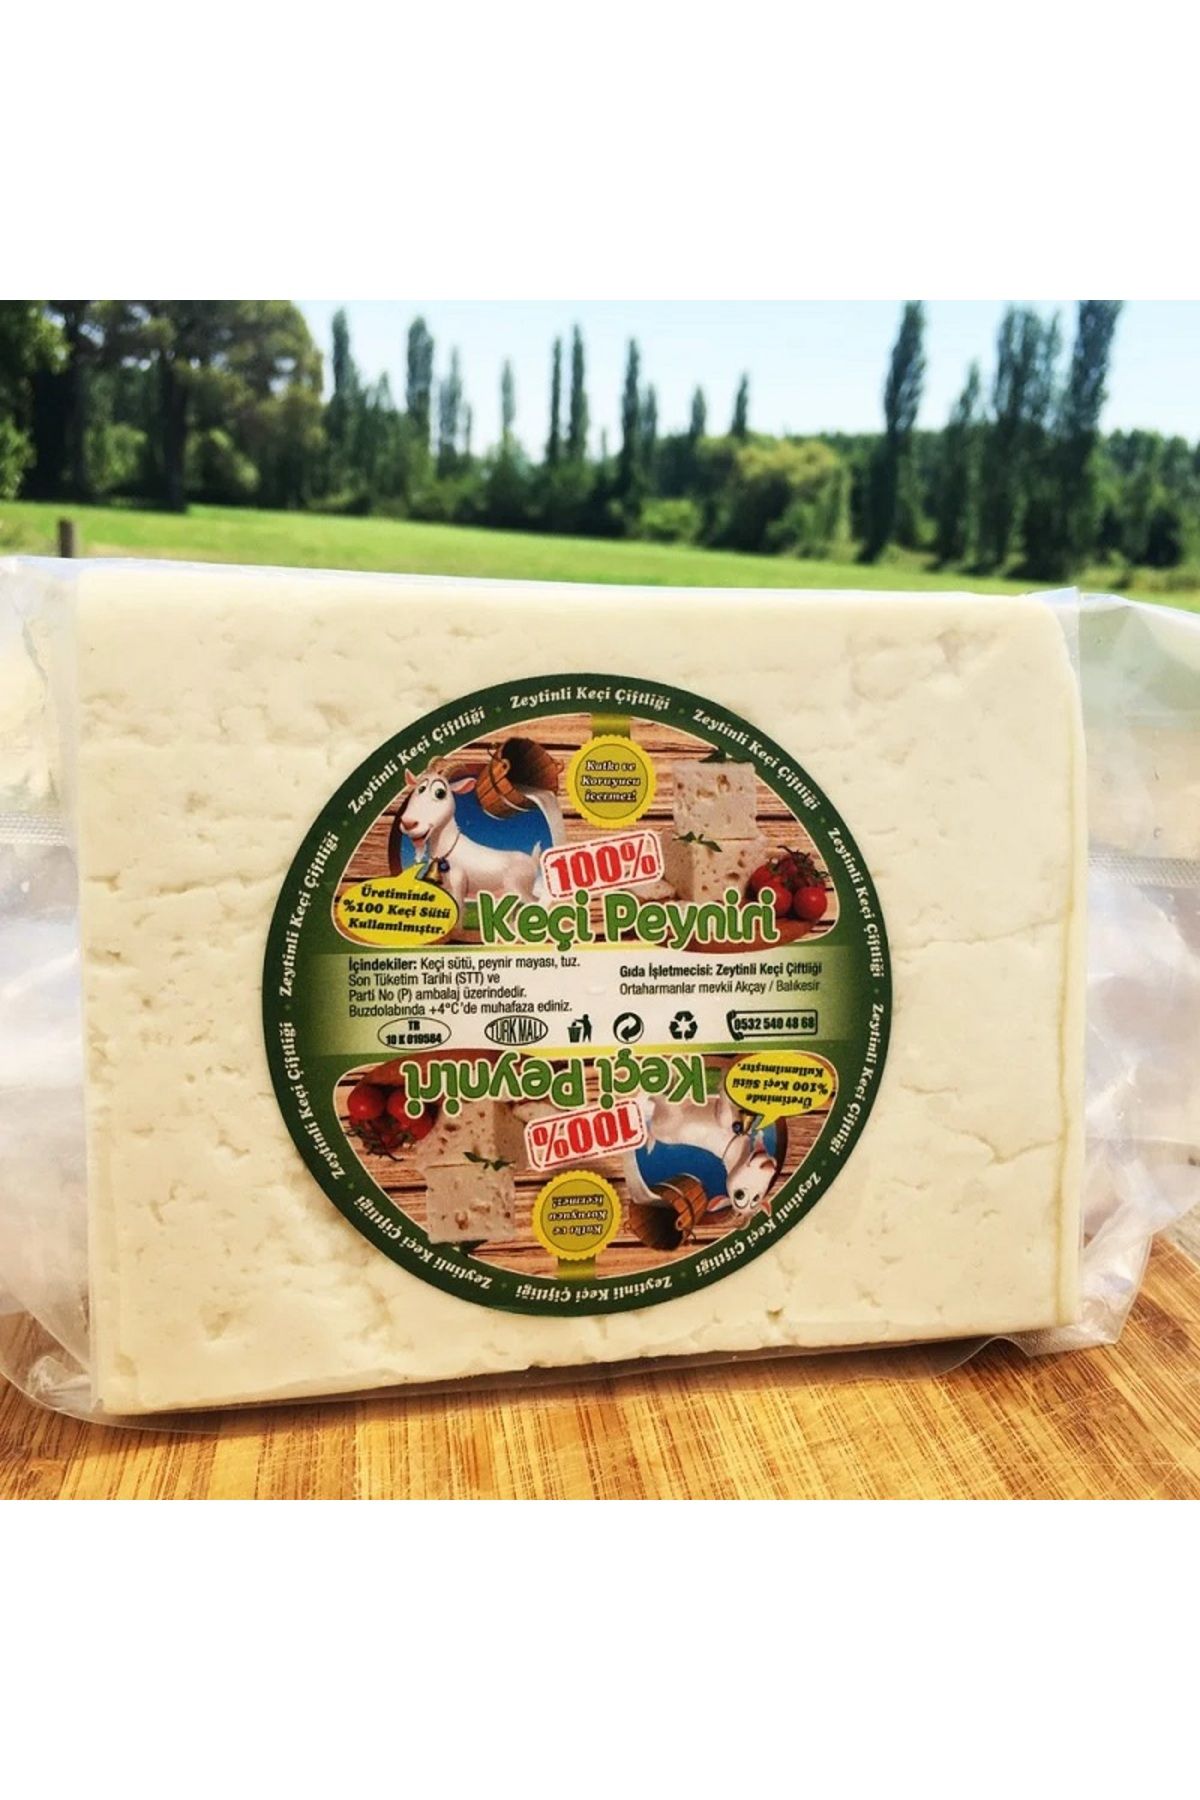 Zeytinli Keçi Çiftliği Az Kaya Tuzlu Şirden Mayalı Yağı Alınmamış %100 Keçi Sütünden Klasik Keçi Peyniri 450 Gr.